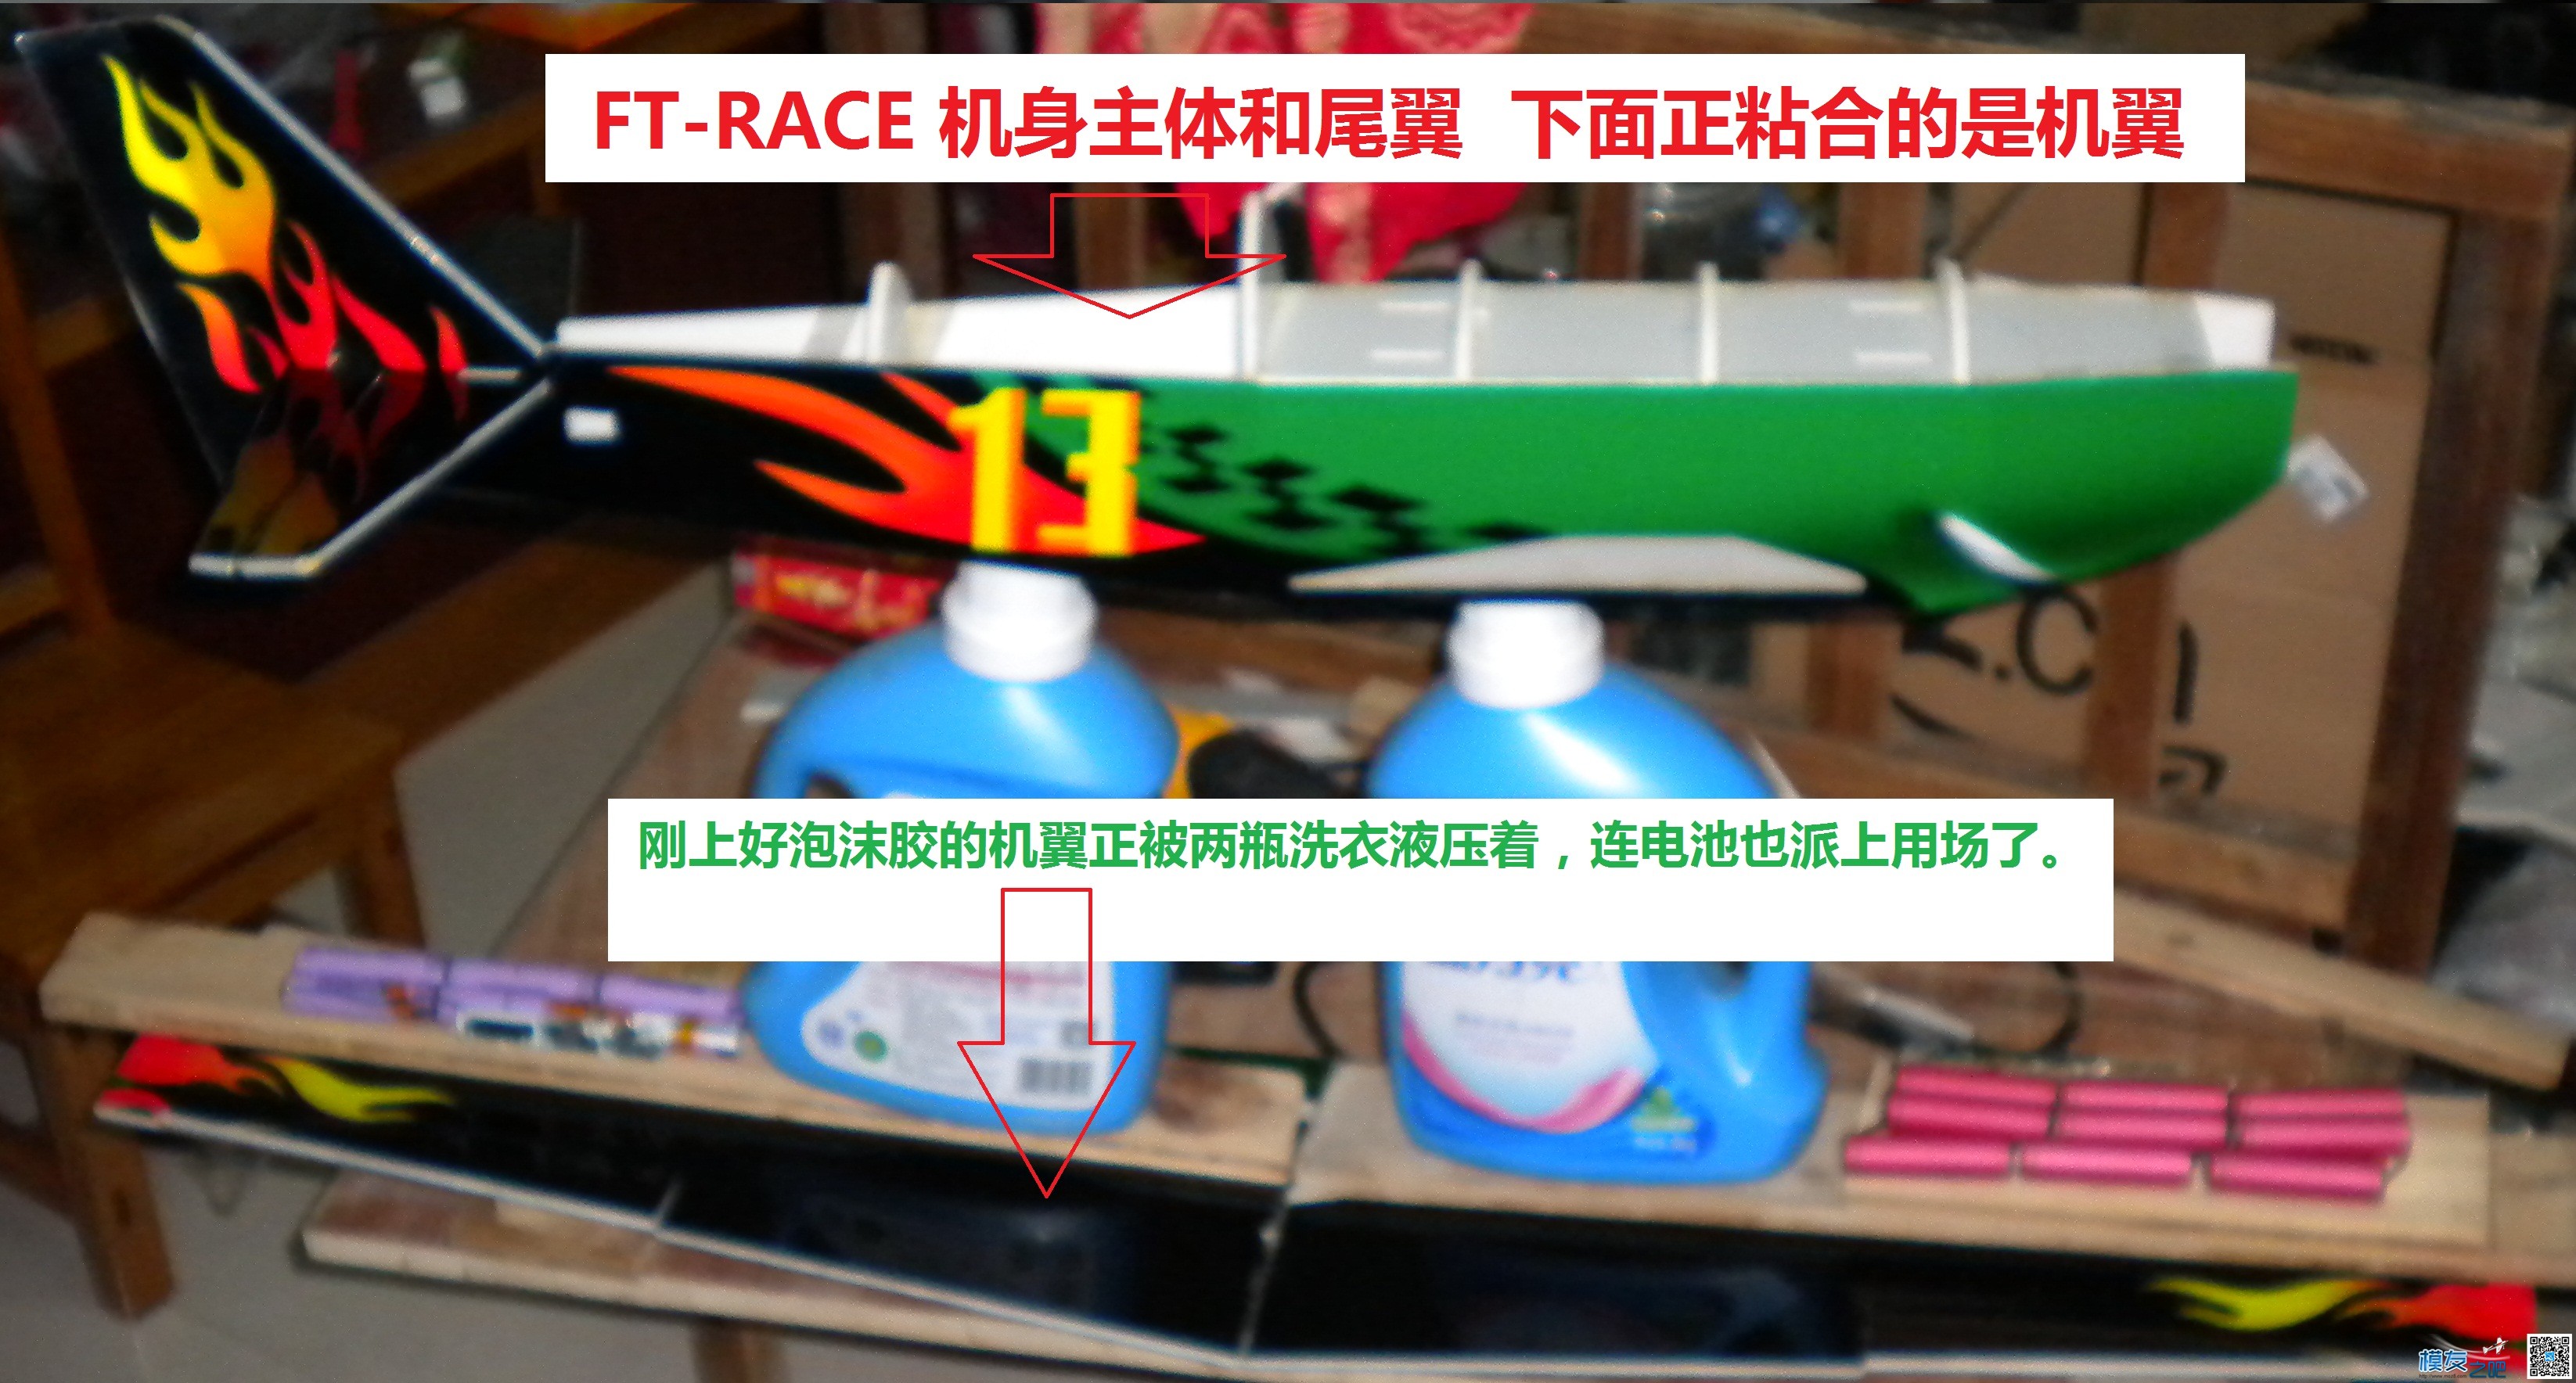 [我爱DIY]+背胶涂装FT-RACER机制作 电池,舵机,电调,电机,图纸 作者:Marshal 9573 